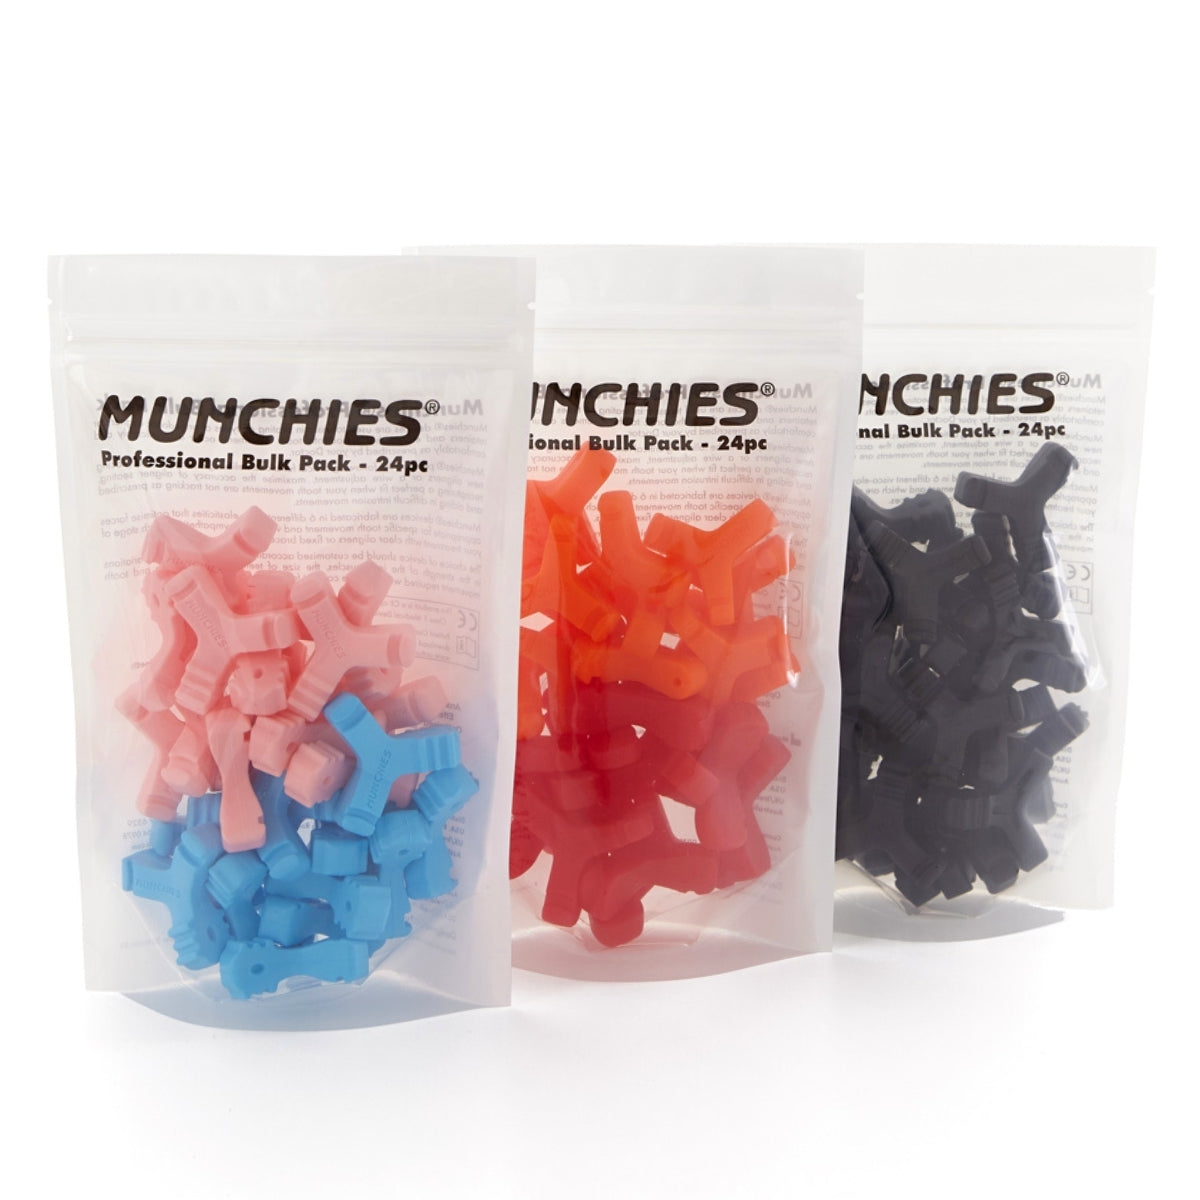 Munchies® EPS, Original and Maintain Bulk Packs